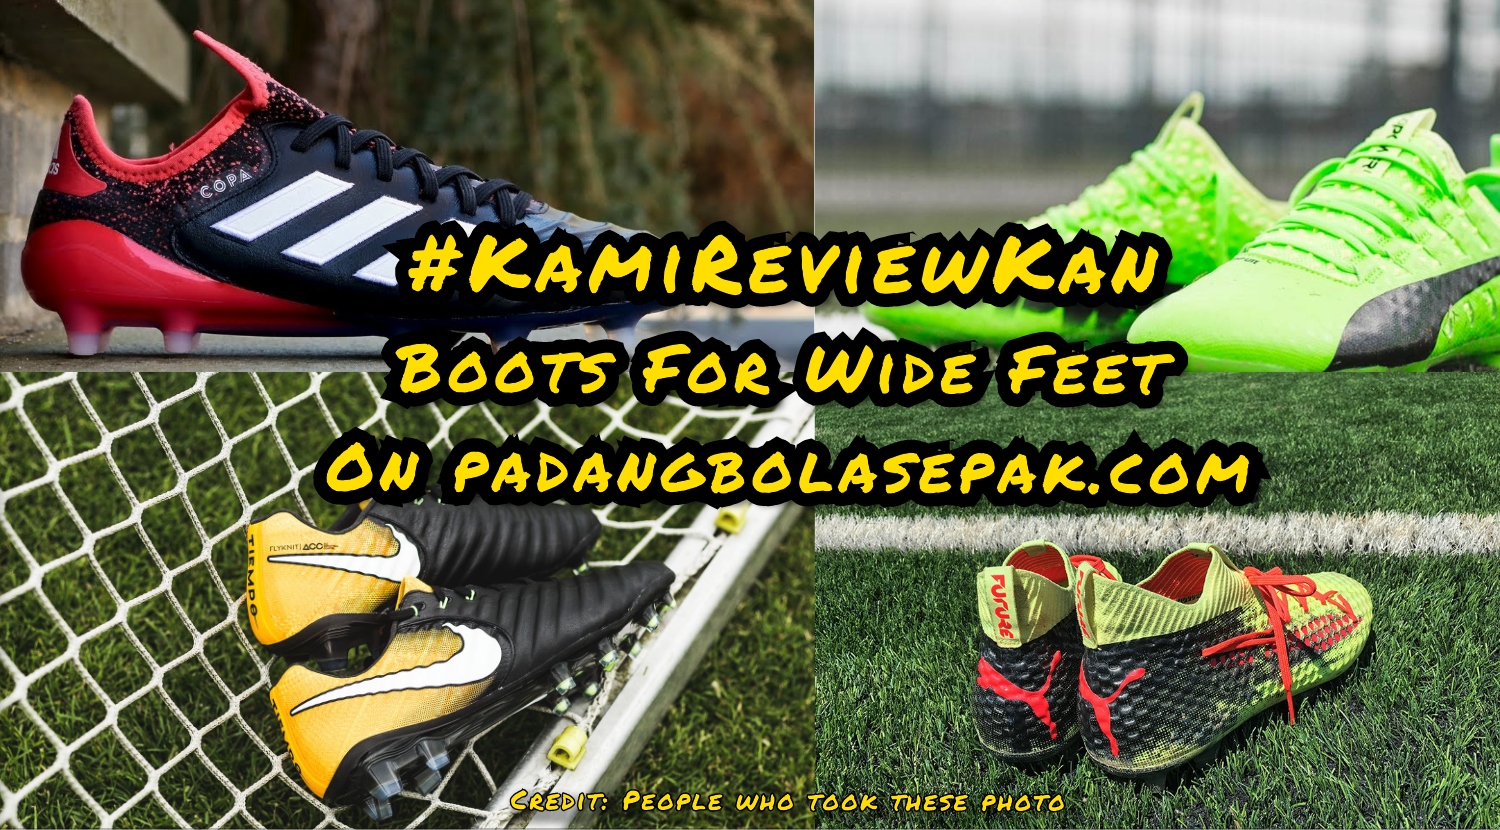 KamiReviewKan: Boots For Wide Feet — PadangBolaSepak